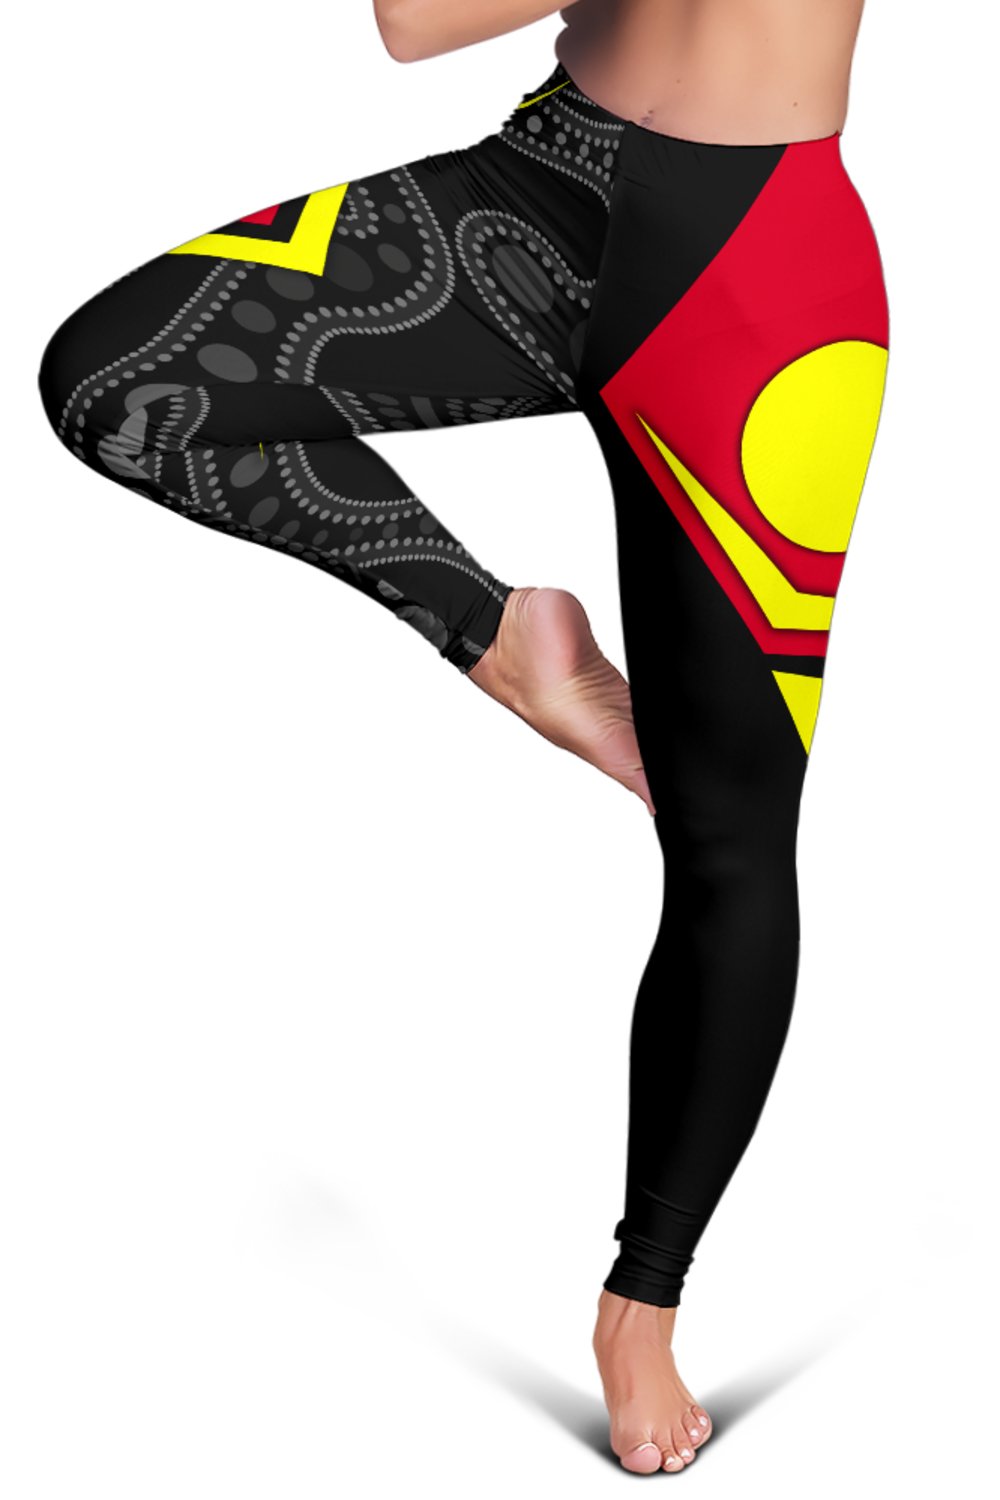 aboriginal-leggings-indigenous-legend